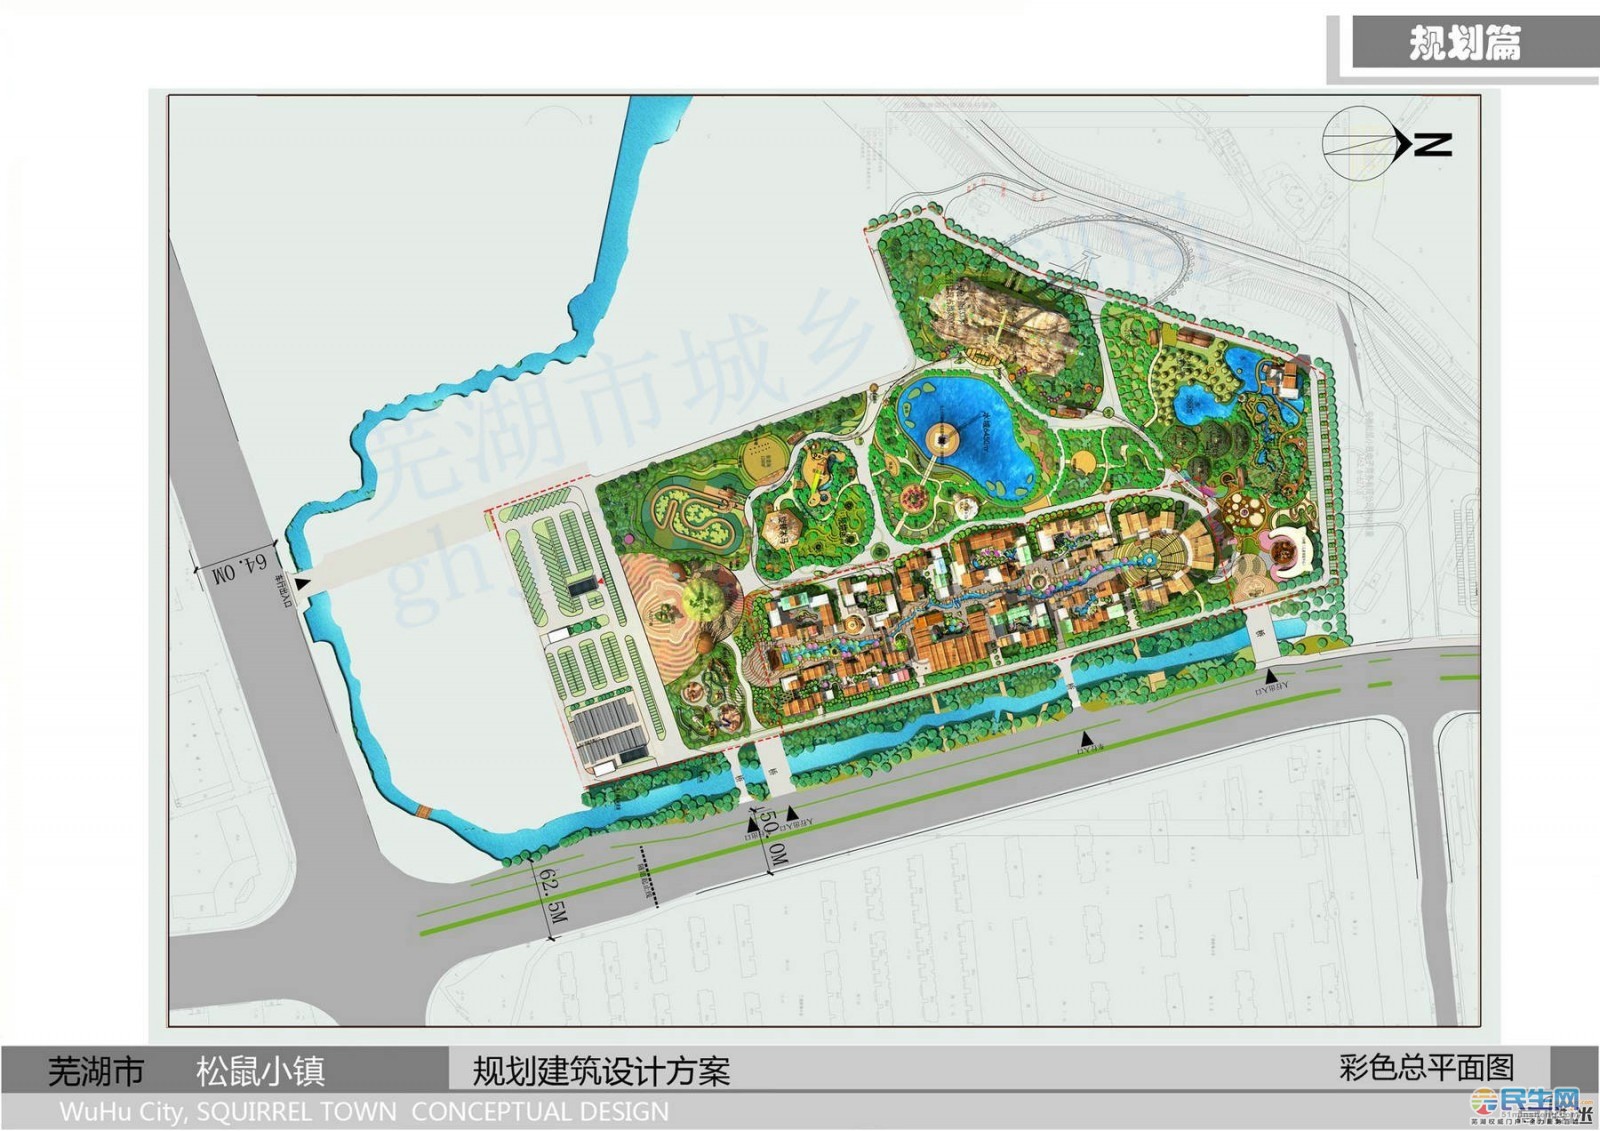 松鼠小镇高清规划图来了133米长江龙湖边观景摩天轮2019年亮相